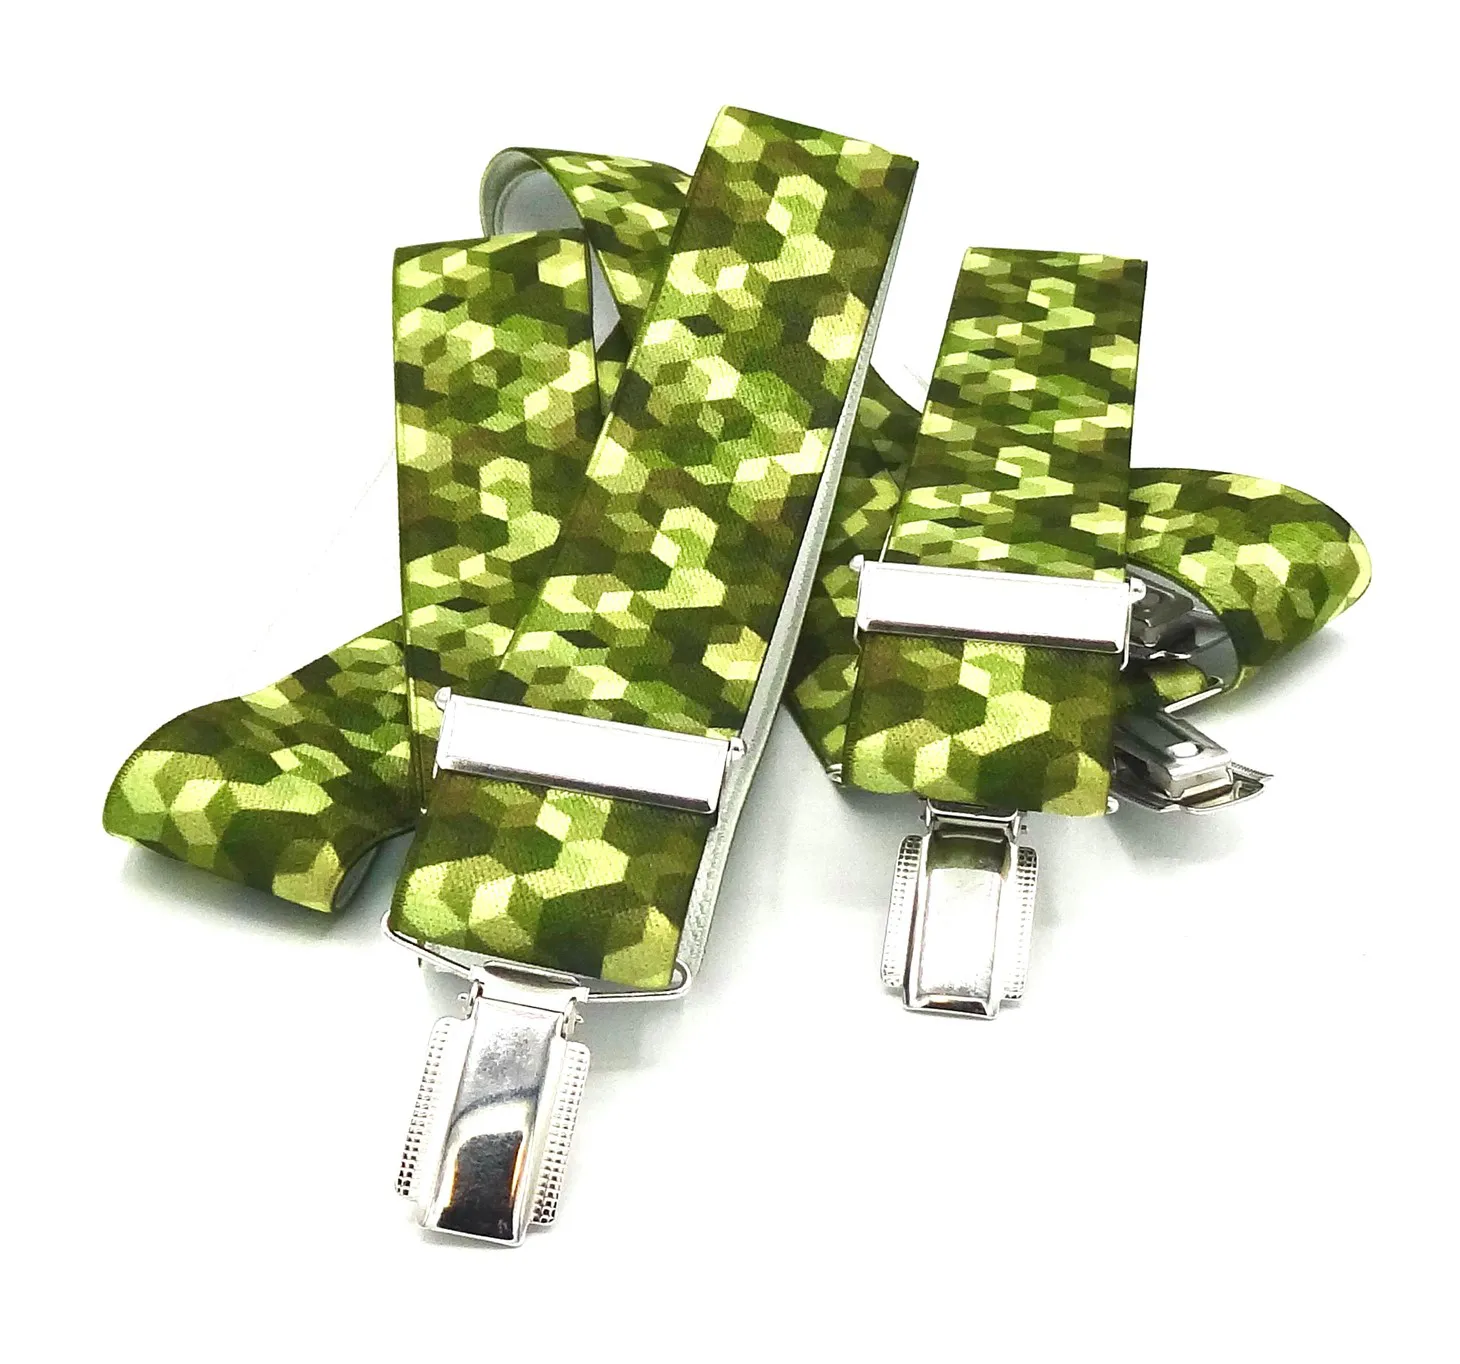 Bretels tinten groen met zeshoekig blokjes patroon